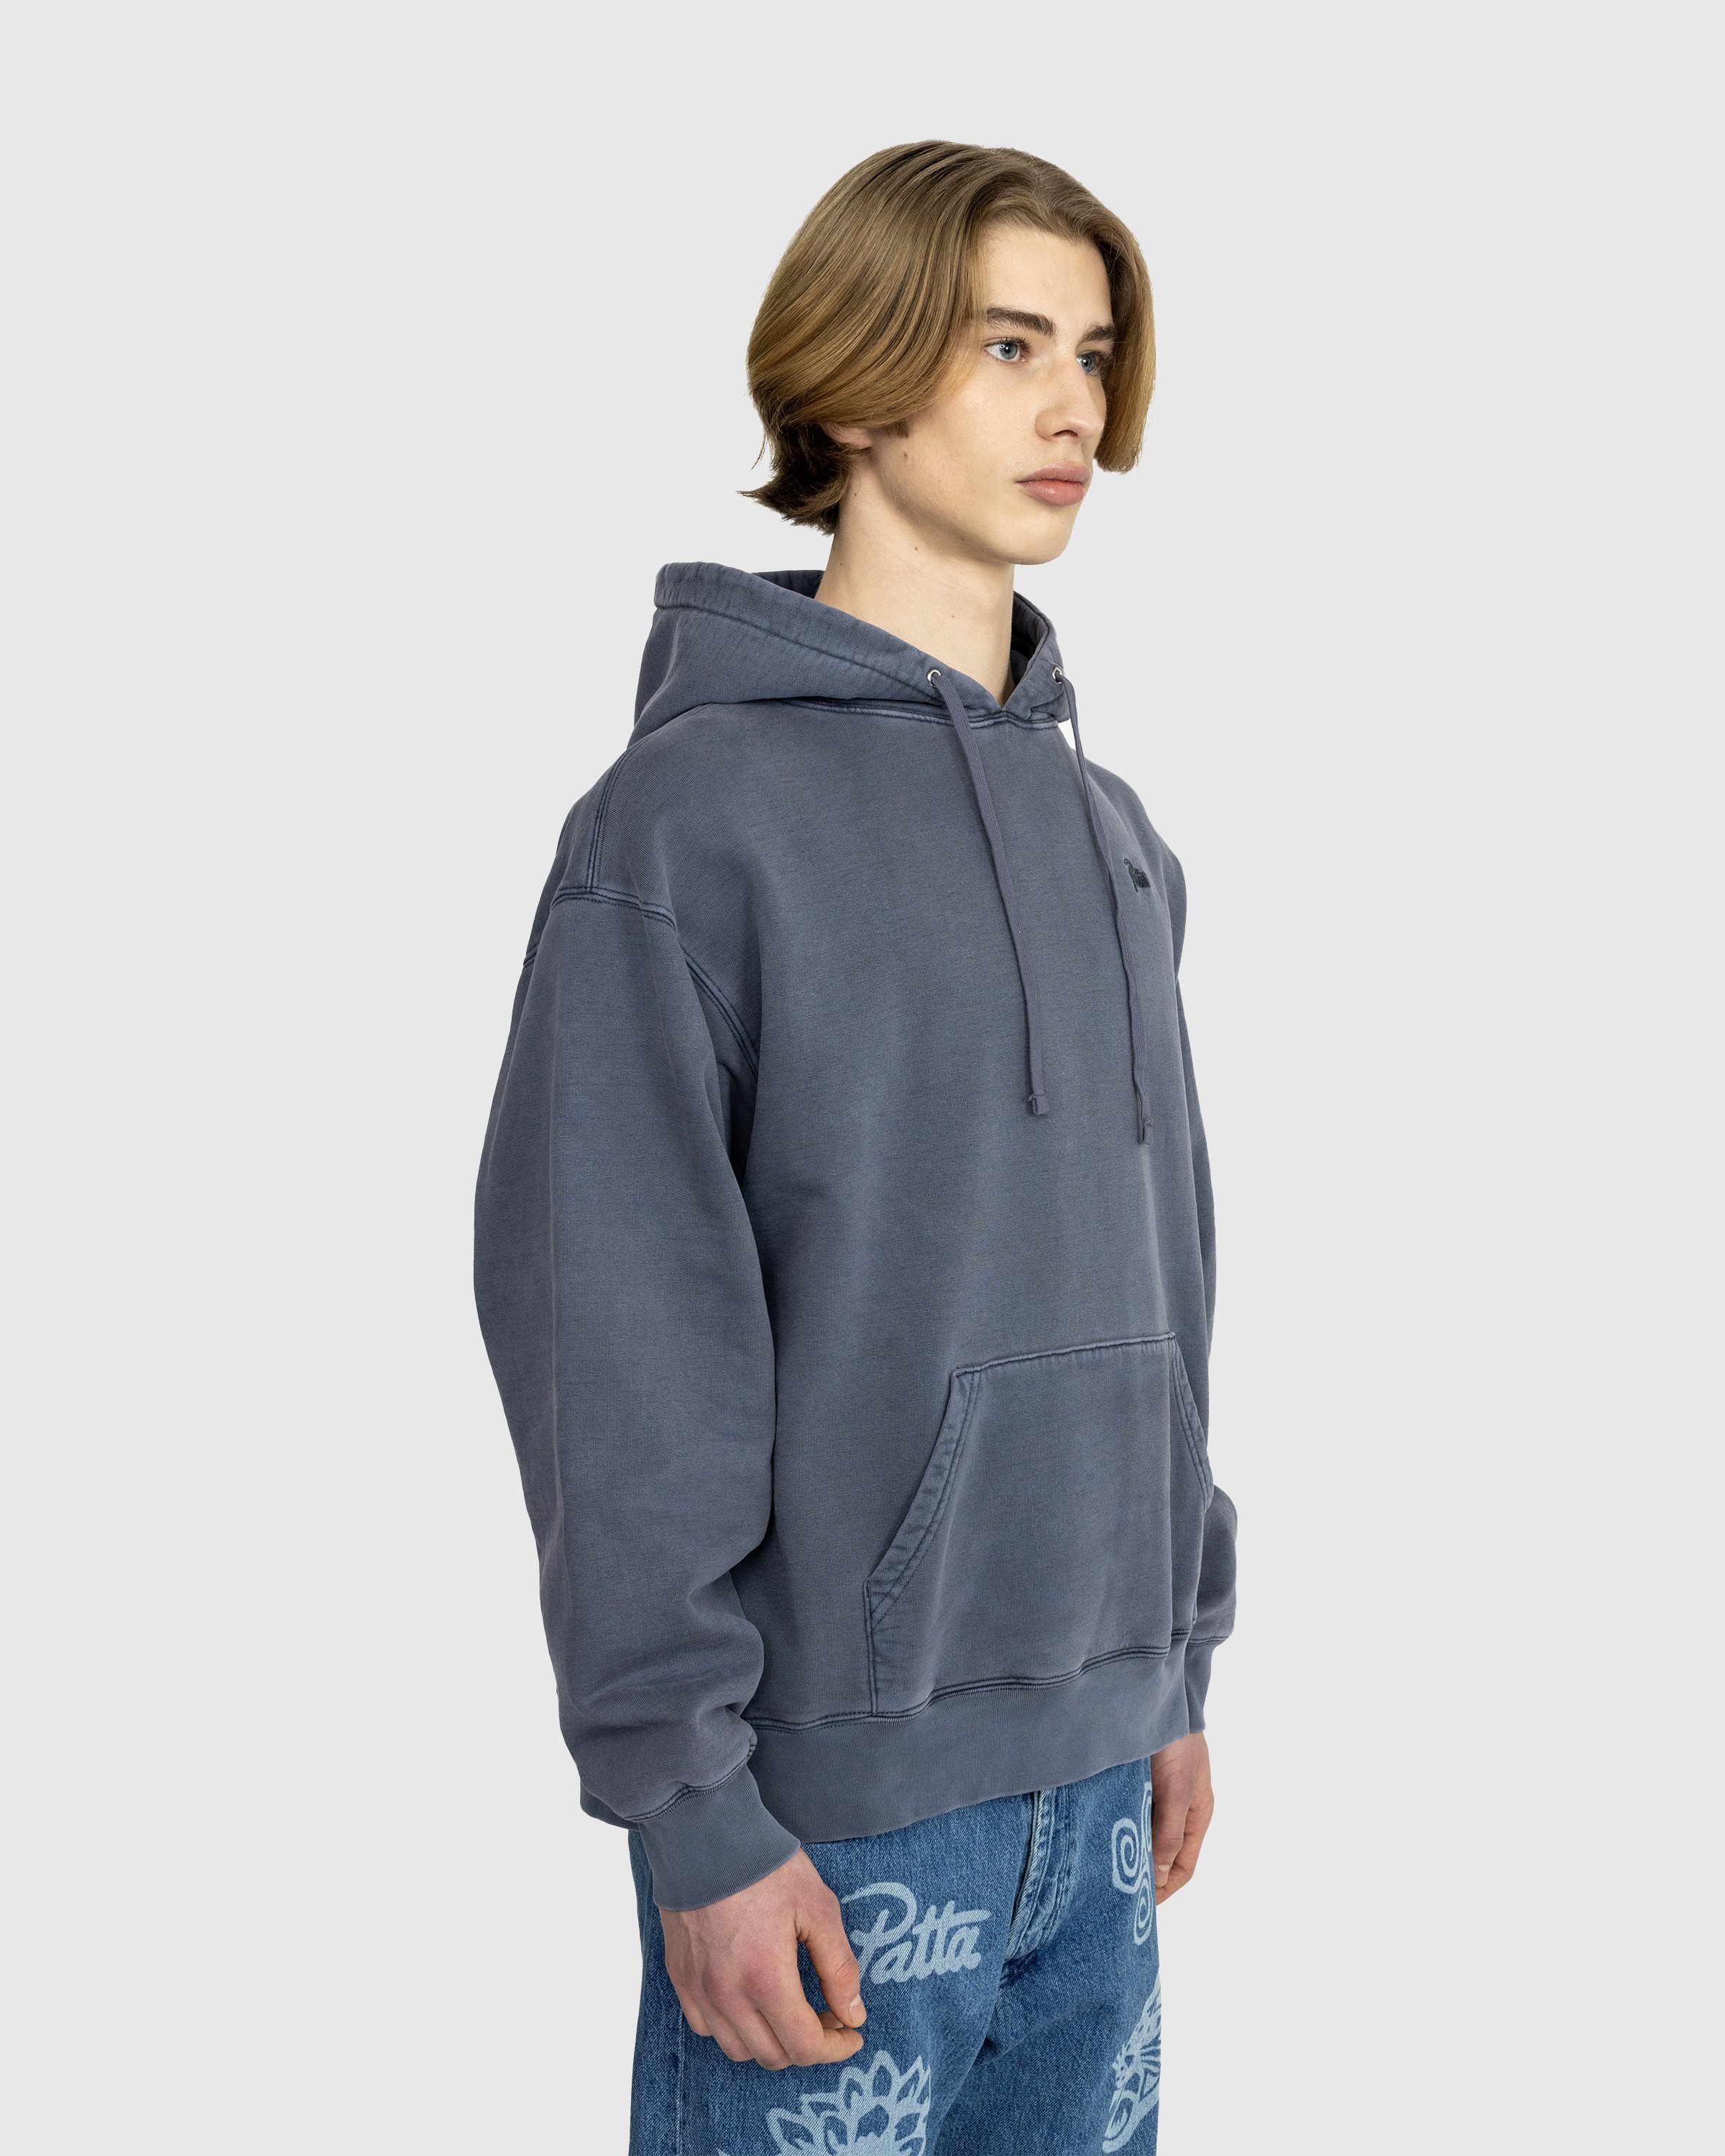 Patta - Basic Washed Boxy Hooded Sweater - Clothing - Grey - Image 4